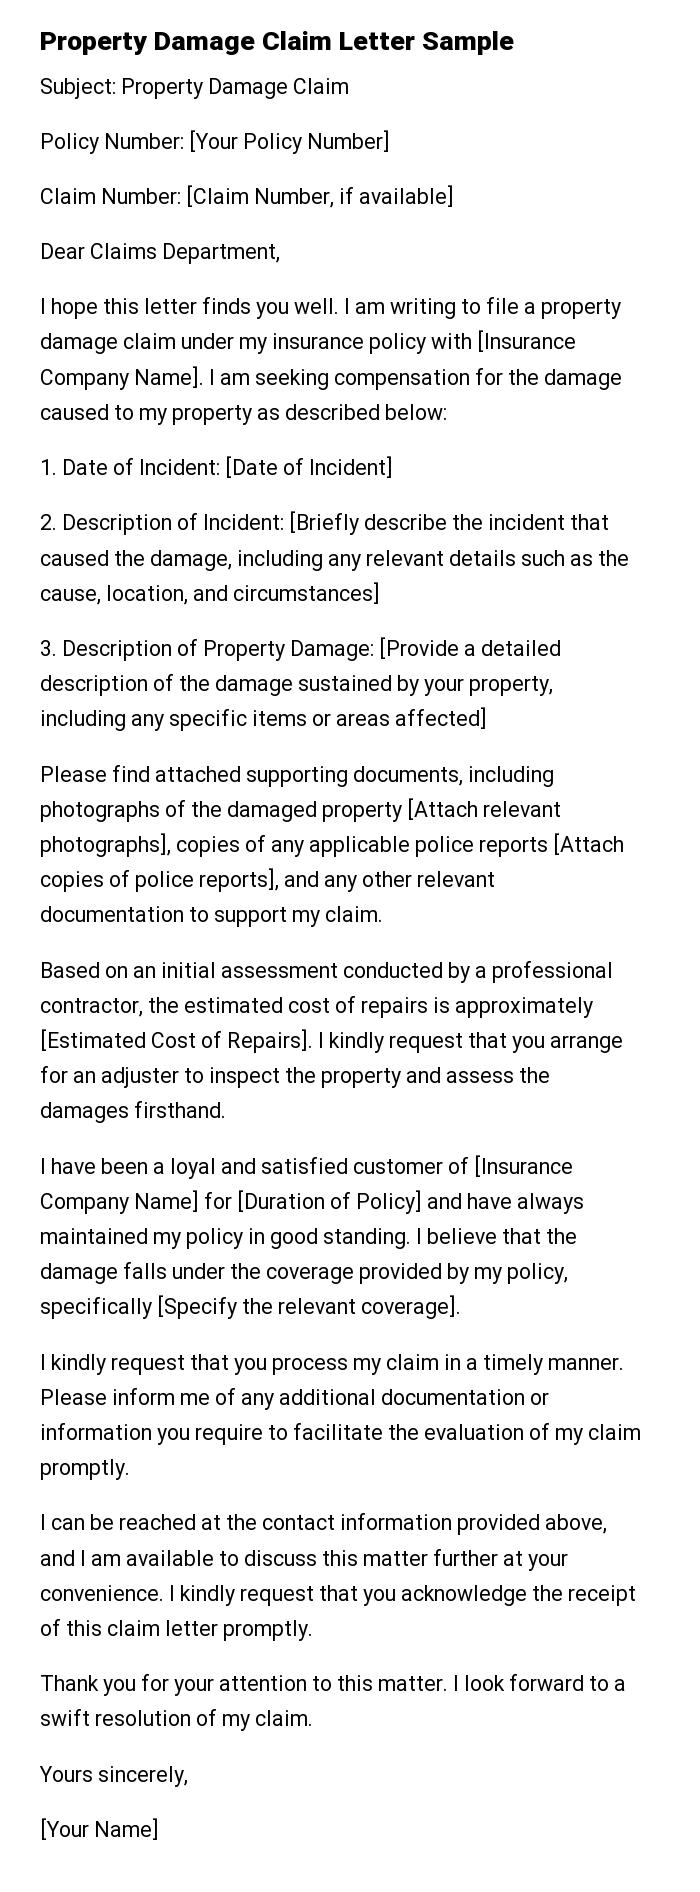 Property Damage Claim Letter Sample